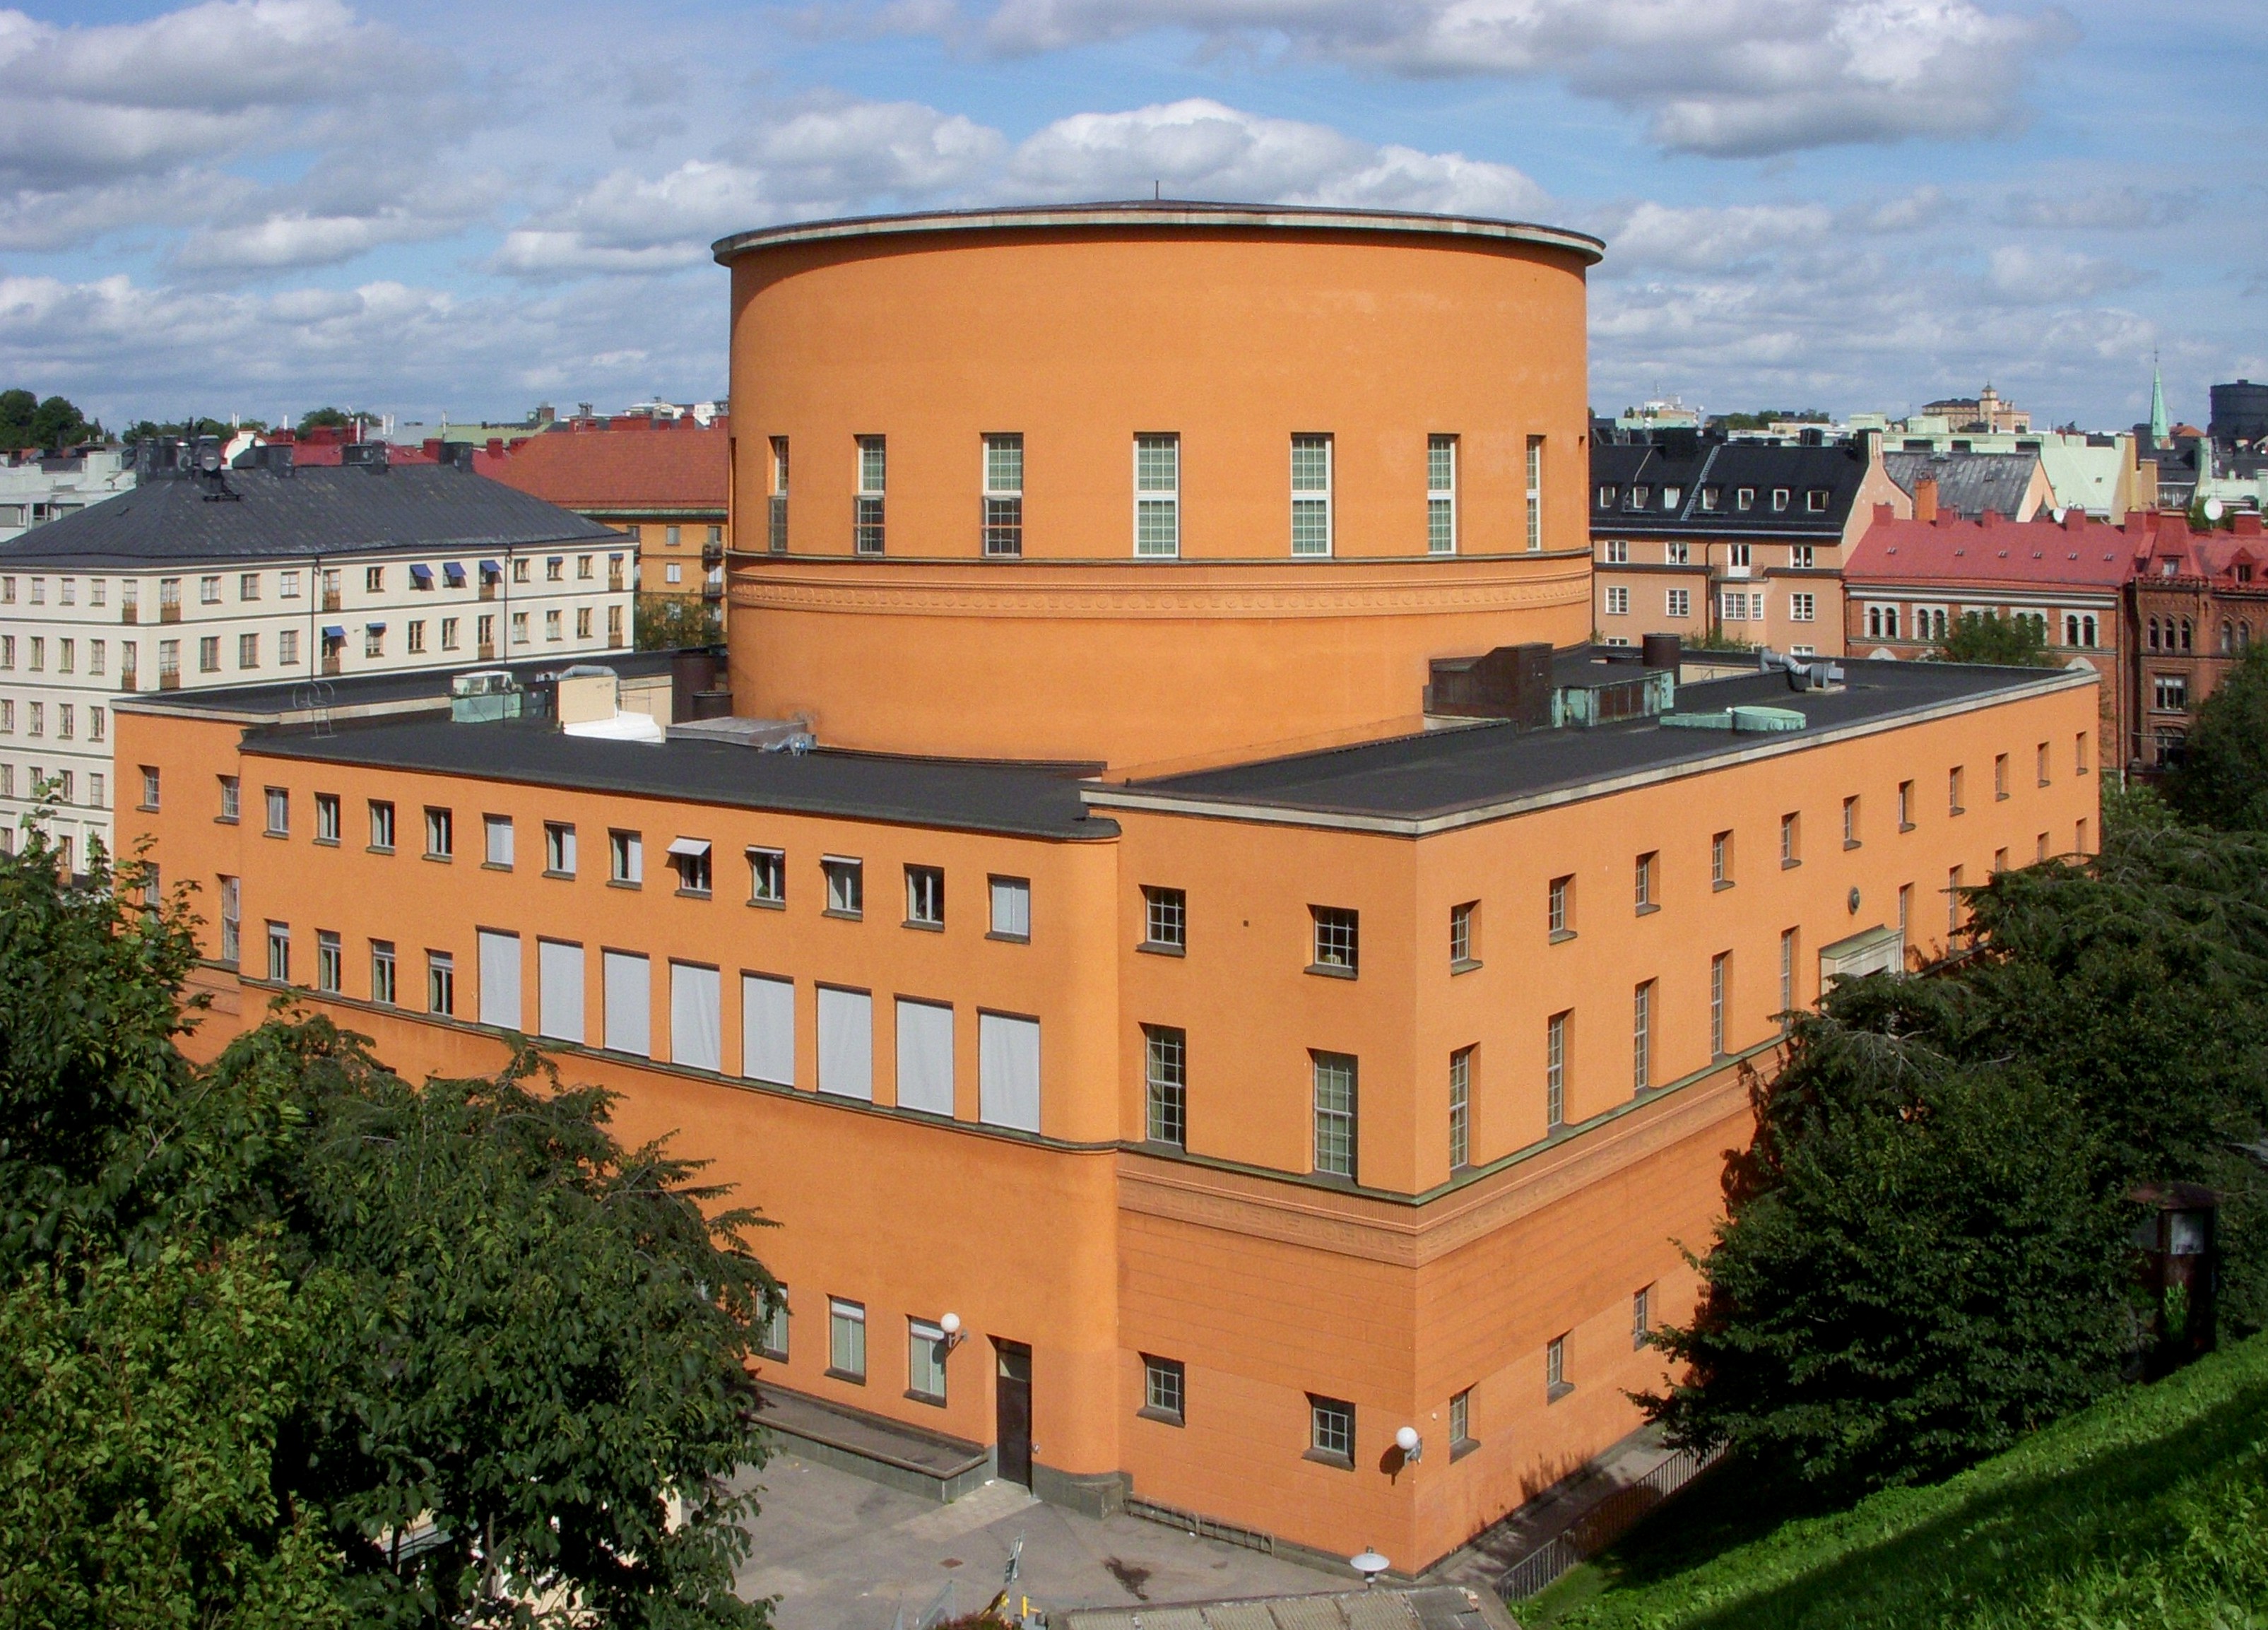 Visiting Stockholms Stadsbibliotek